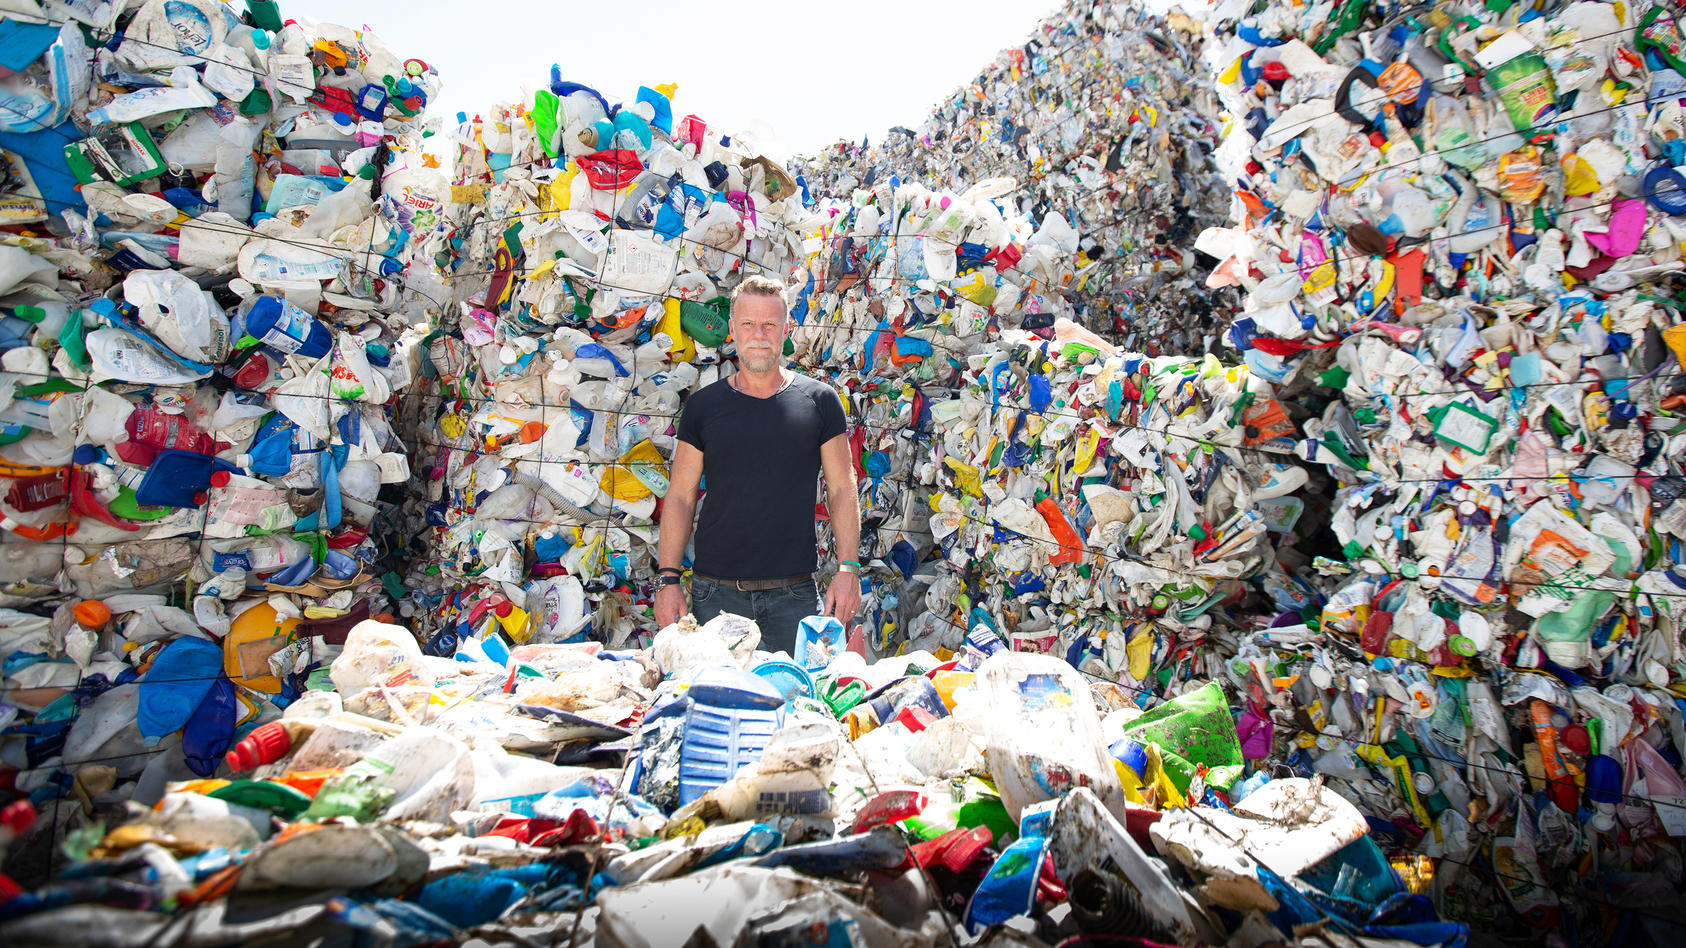 Extrem-Reporter Jenke von Wilmsdorff will gegen den Plastikmüll kämpfen.